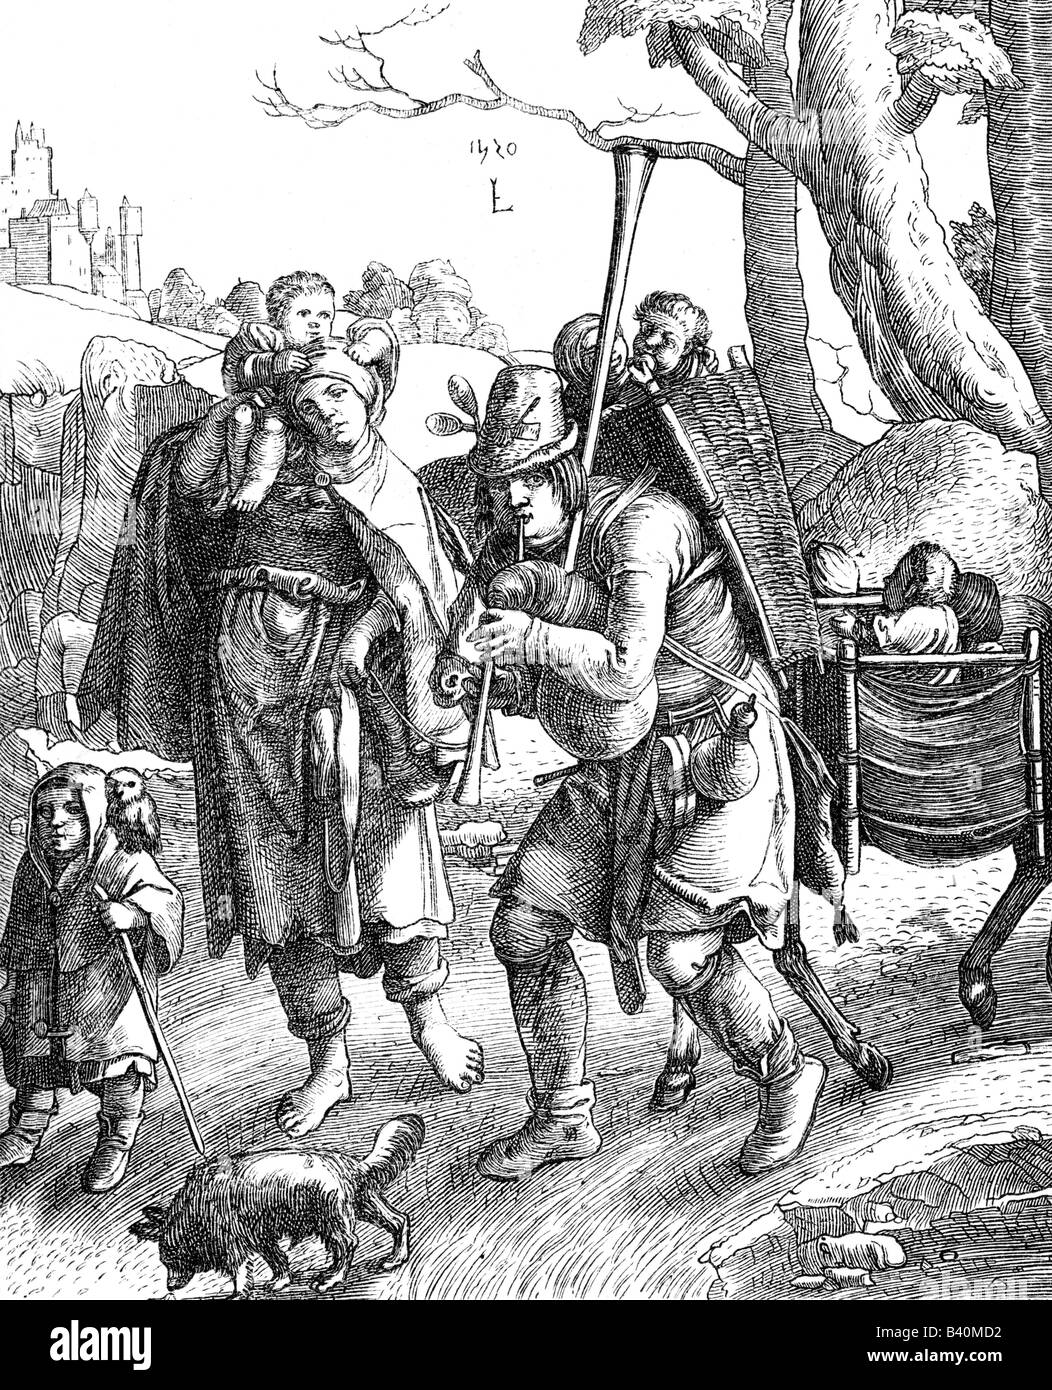 Eulenspiegel, Till (1300-1350), deutscher Joker, mit Familie auf einer Reise, Kupferstich, von Lucas van Leyden (1494 - 1533), Holland, 1520, Artist's Urheberrecht nicht geklärt zu werden. Stockfoto